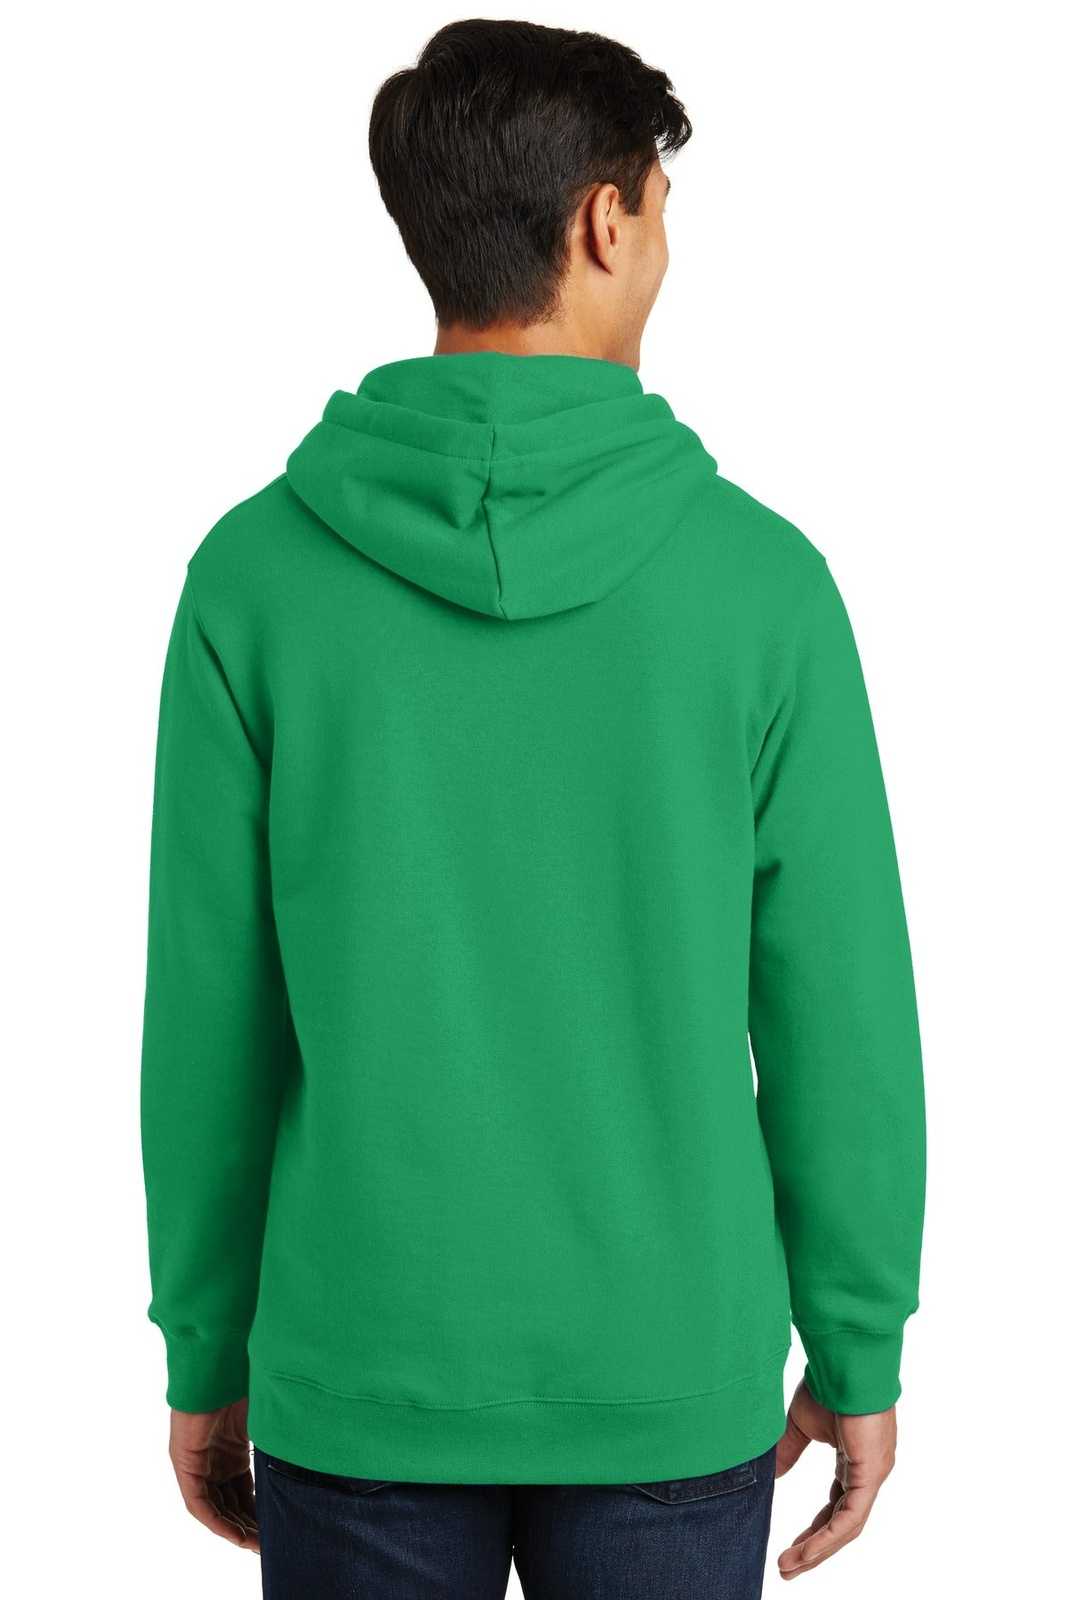 Port & Company PC850H Fan Favorite Fleece Pullover Hooded Sweatshirt - Athletic Kelly - HIT a Double - 1